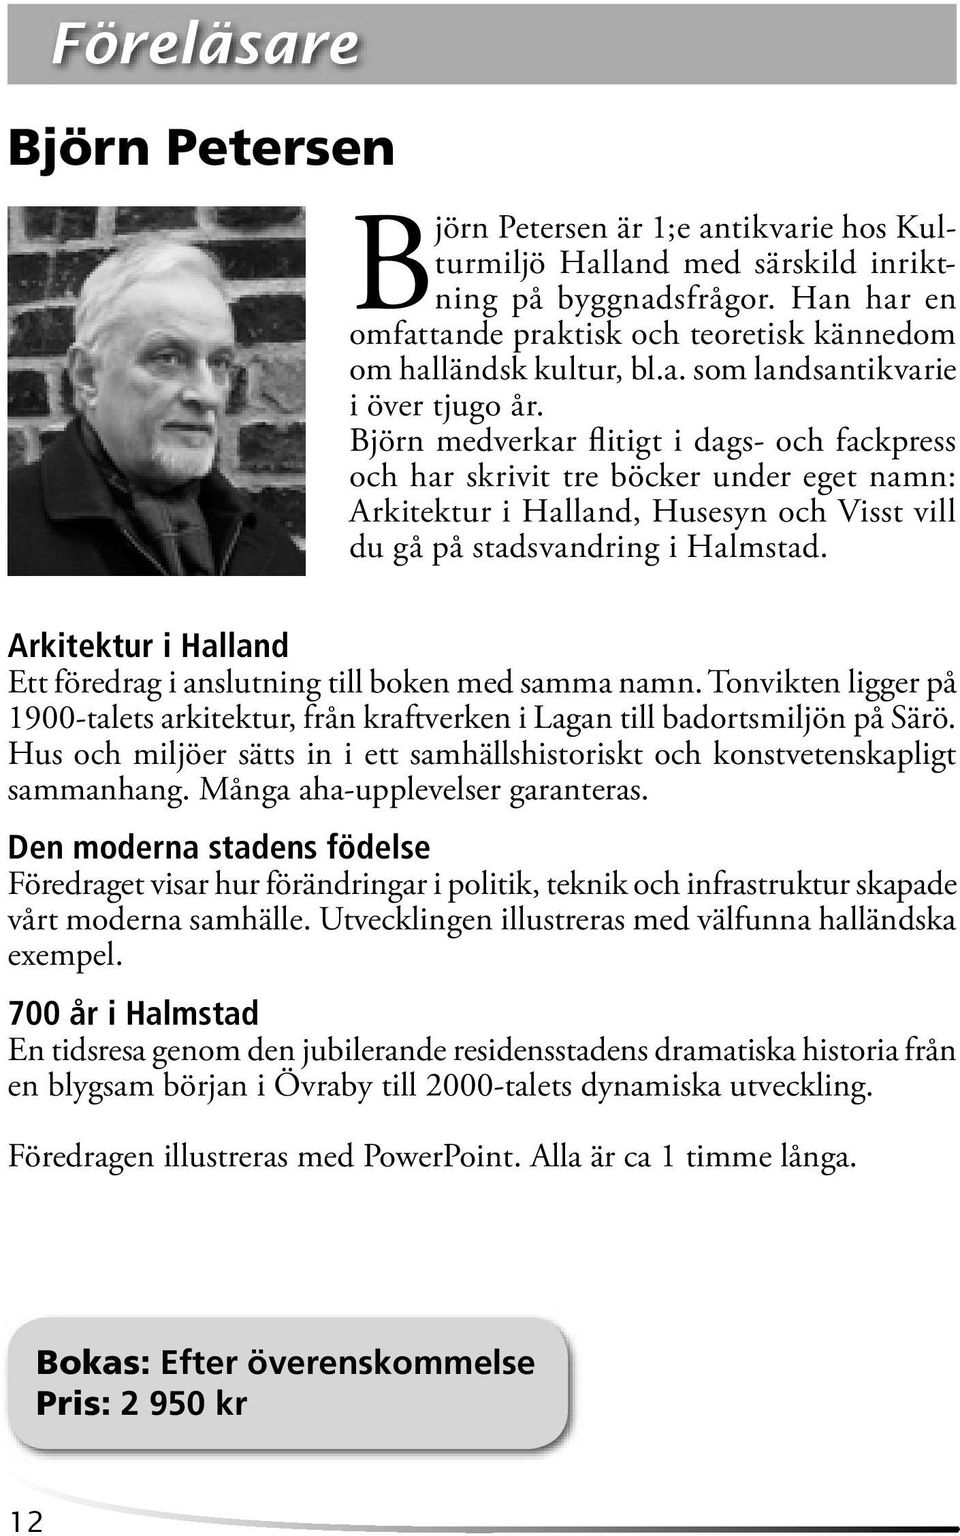 Björn medverkar fl itigt i dags- och fackpress och har skrivit tre böcker under eget namn: Arkitektur i Halland, Husesyn och Visst vill du gå på stadsvandring i Halmstad.